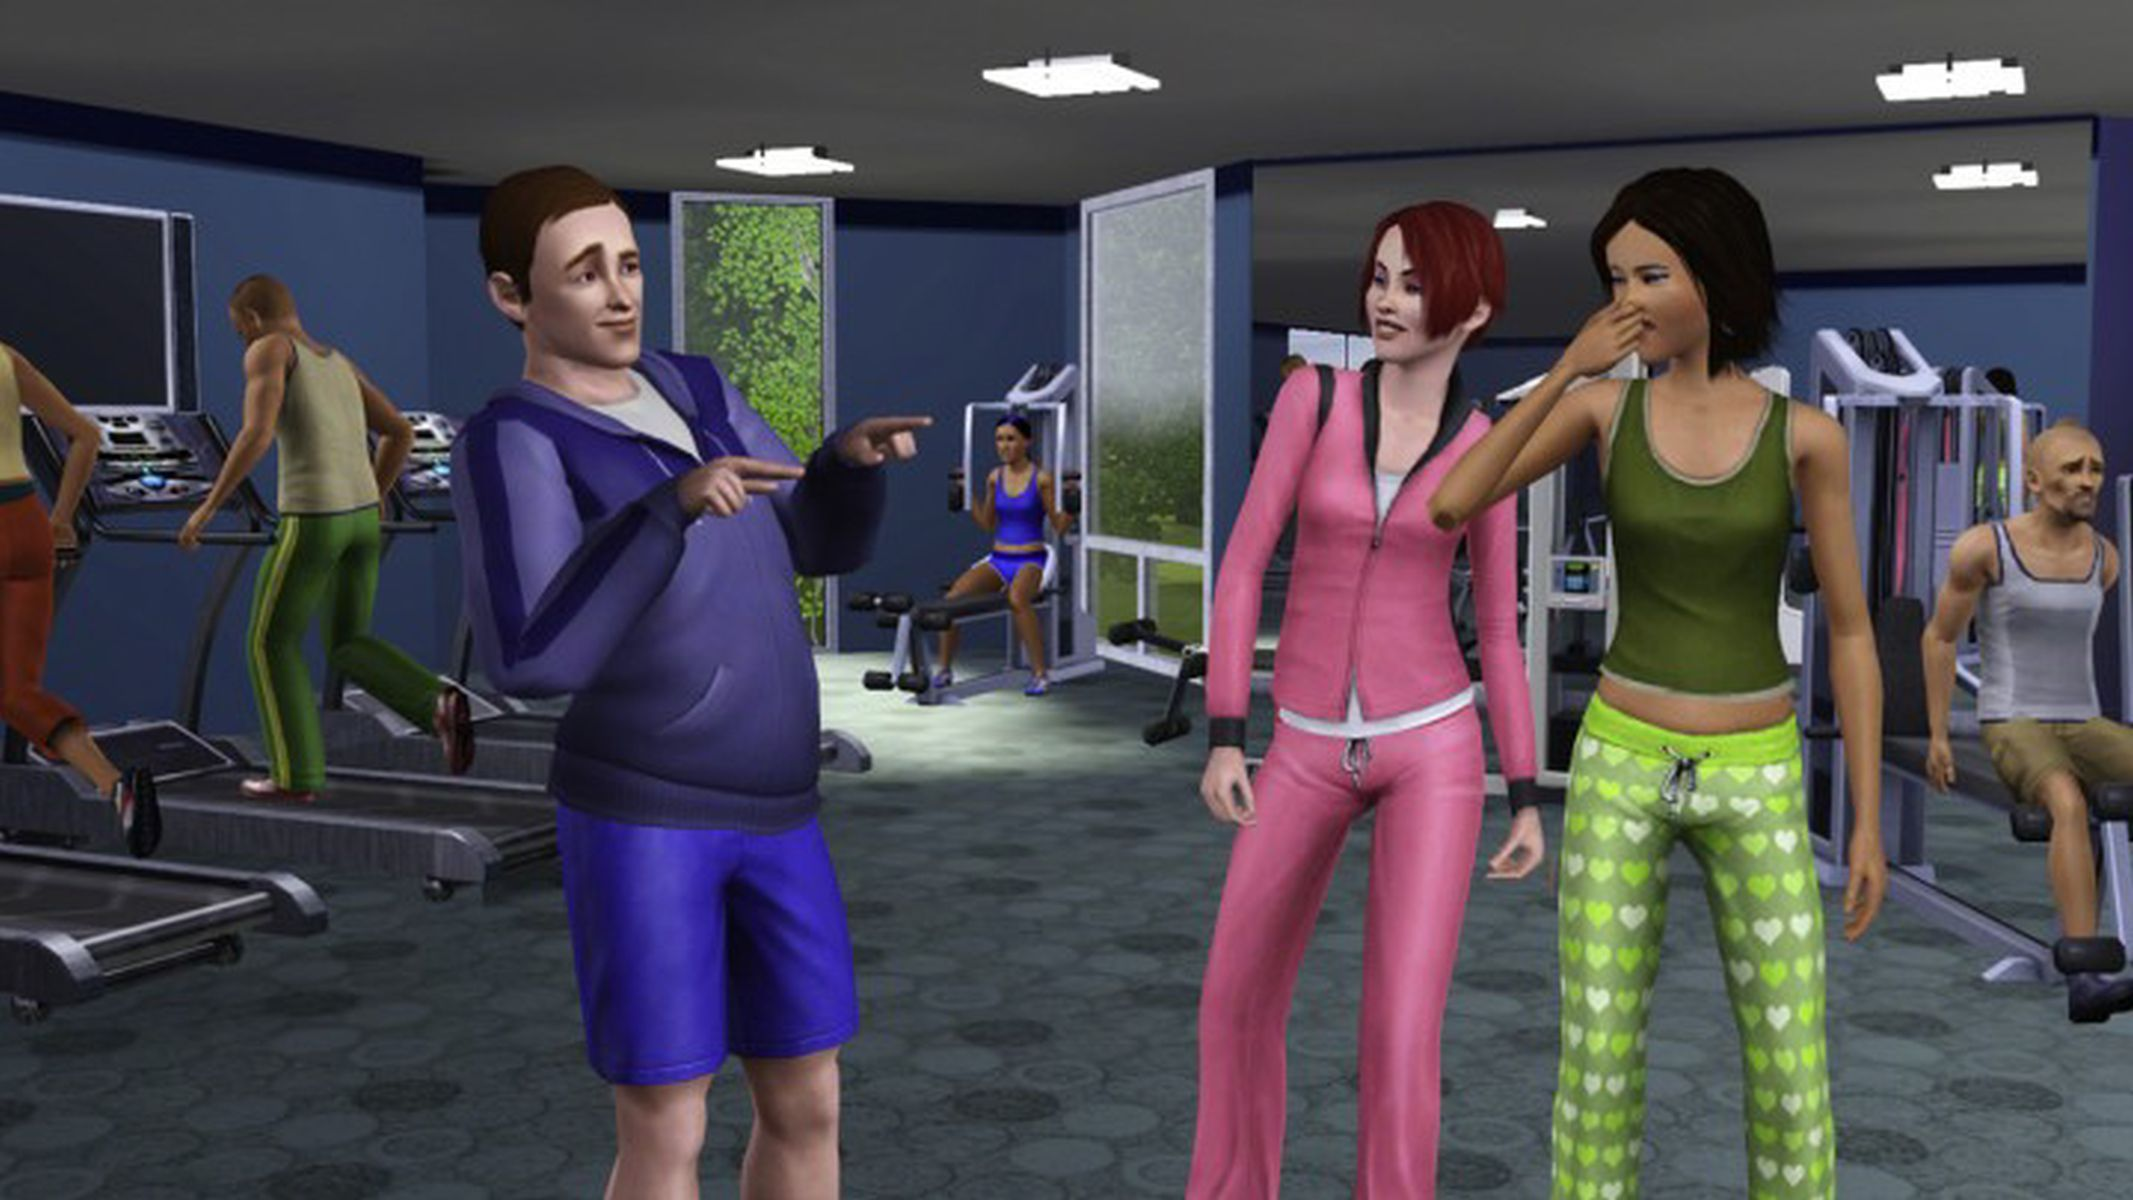 3 Sims Die [Nintendo Wii] -